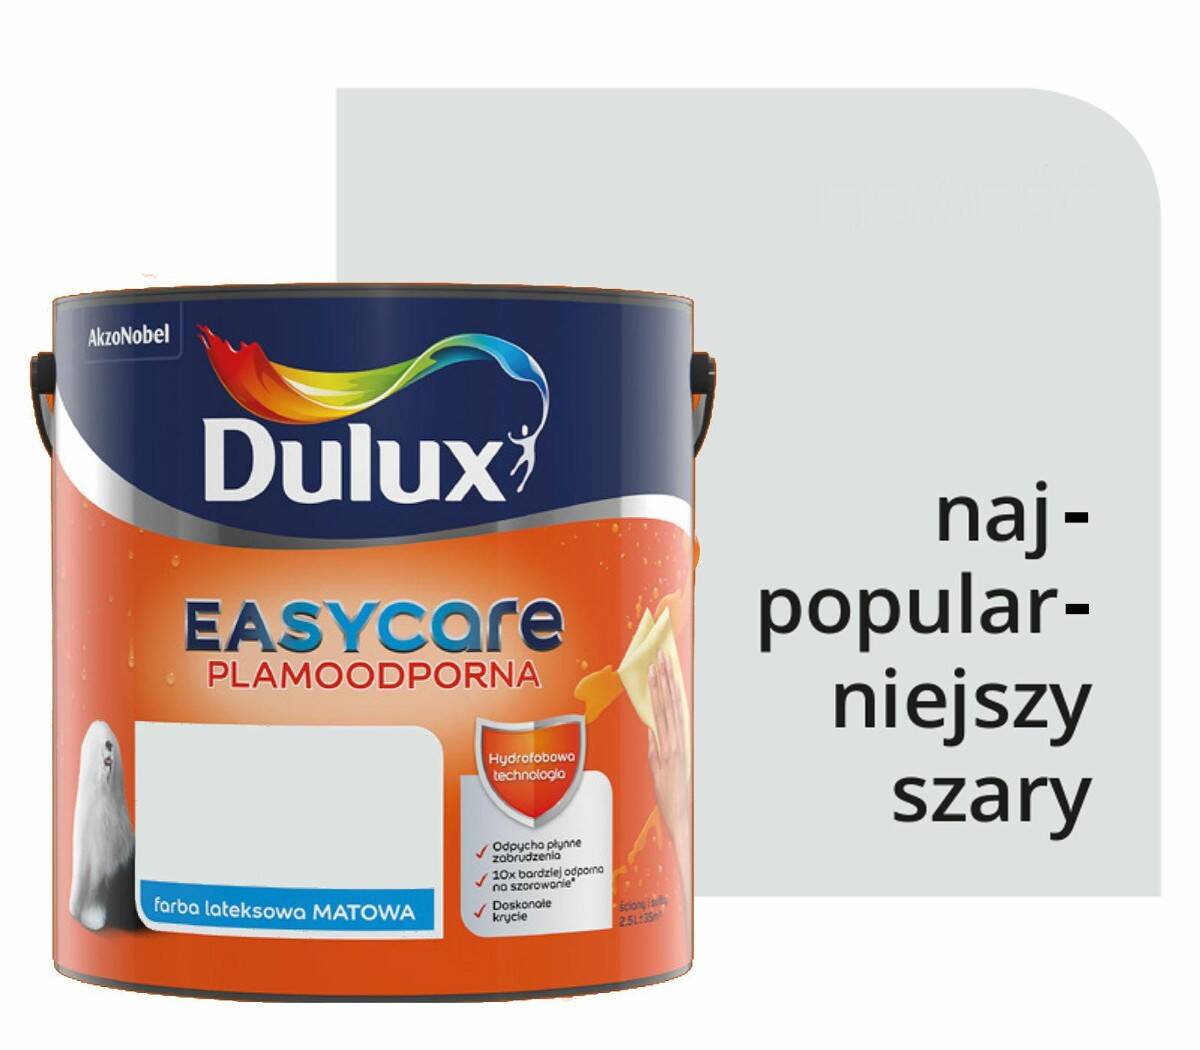 Dulux EasyCare 5L NAJPOPULARNIEJSZY SZARY - Nowość 2019!